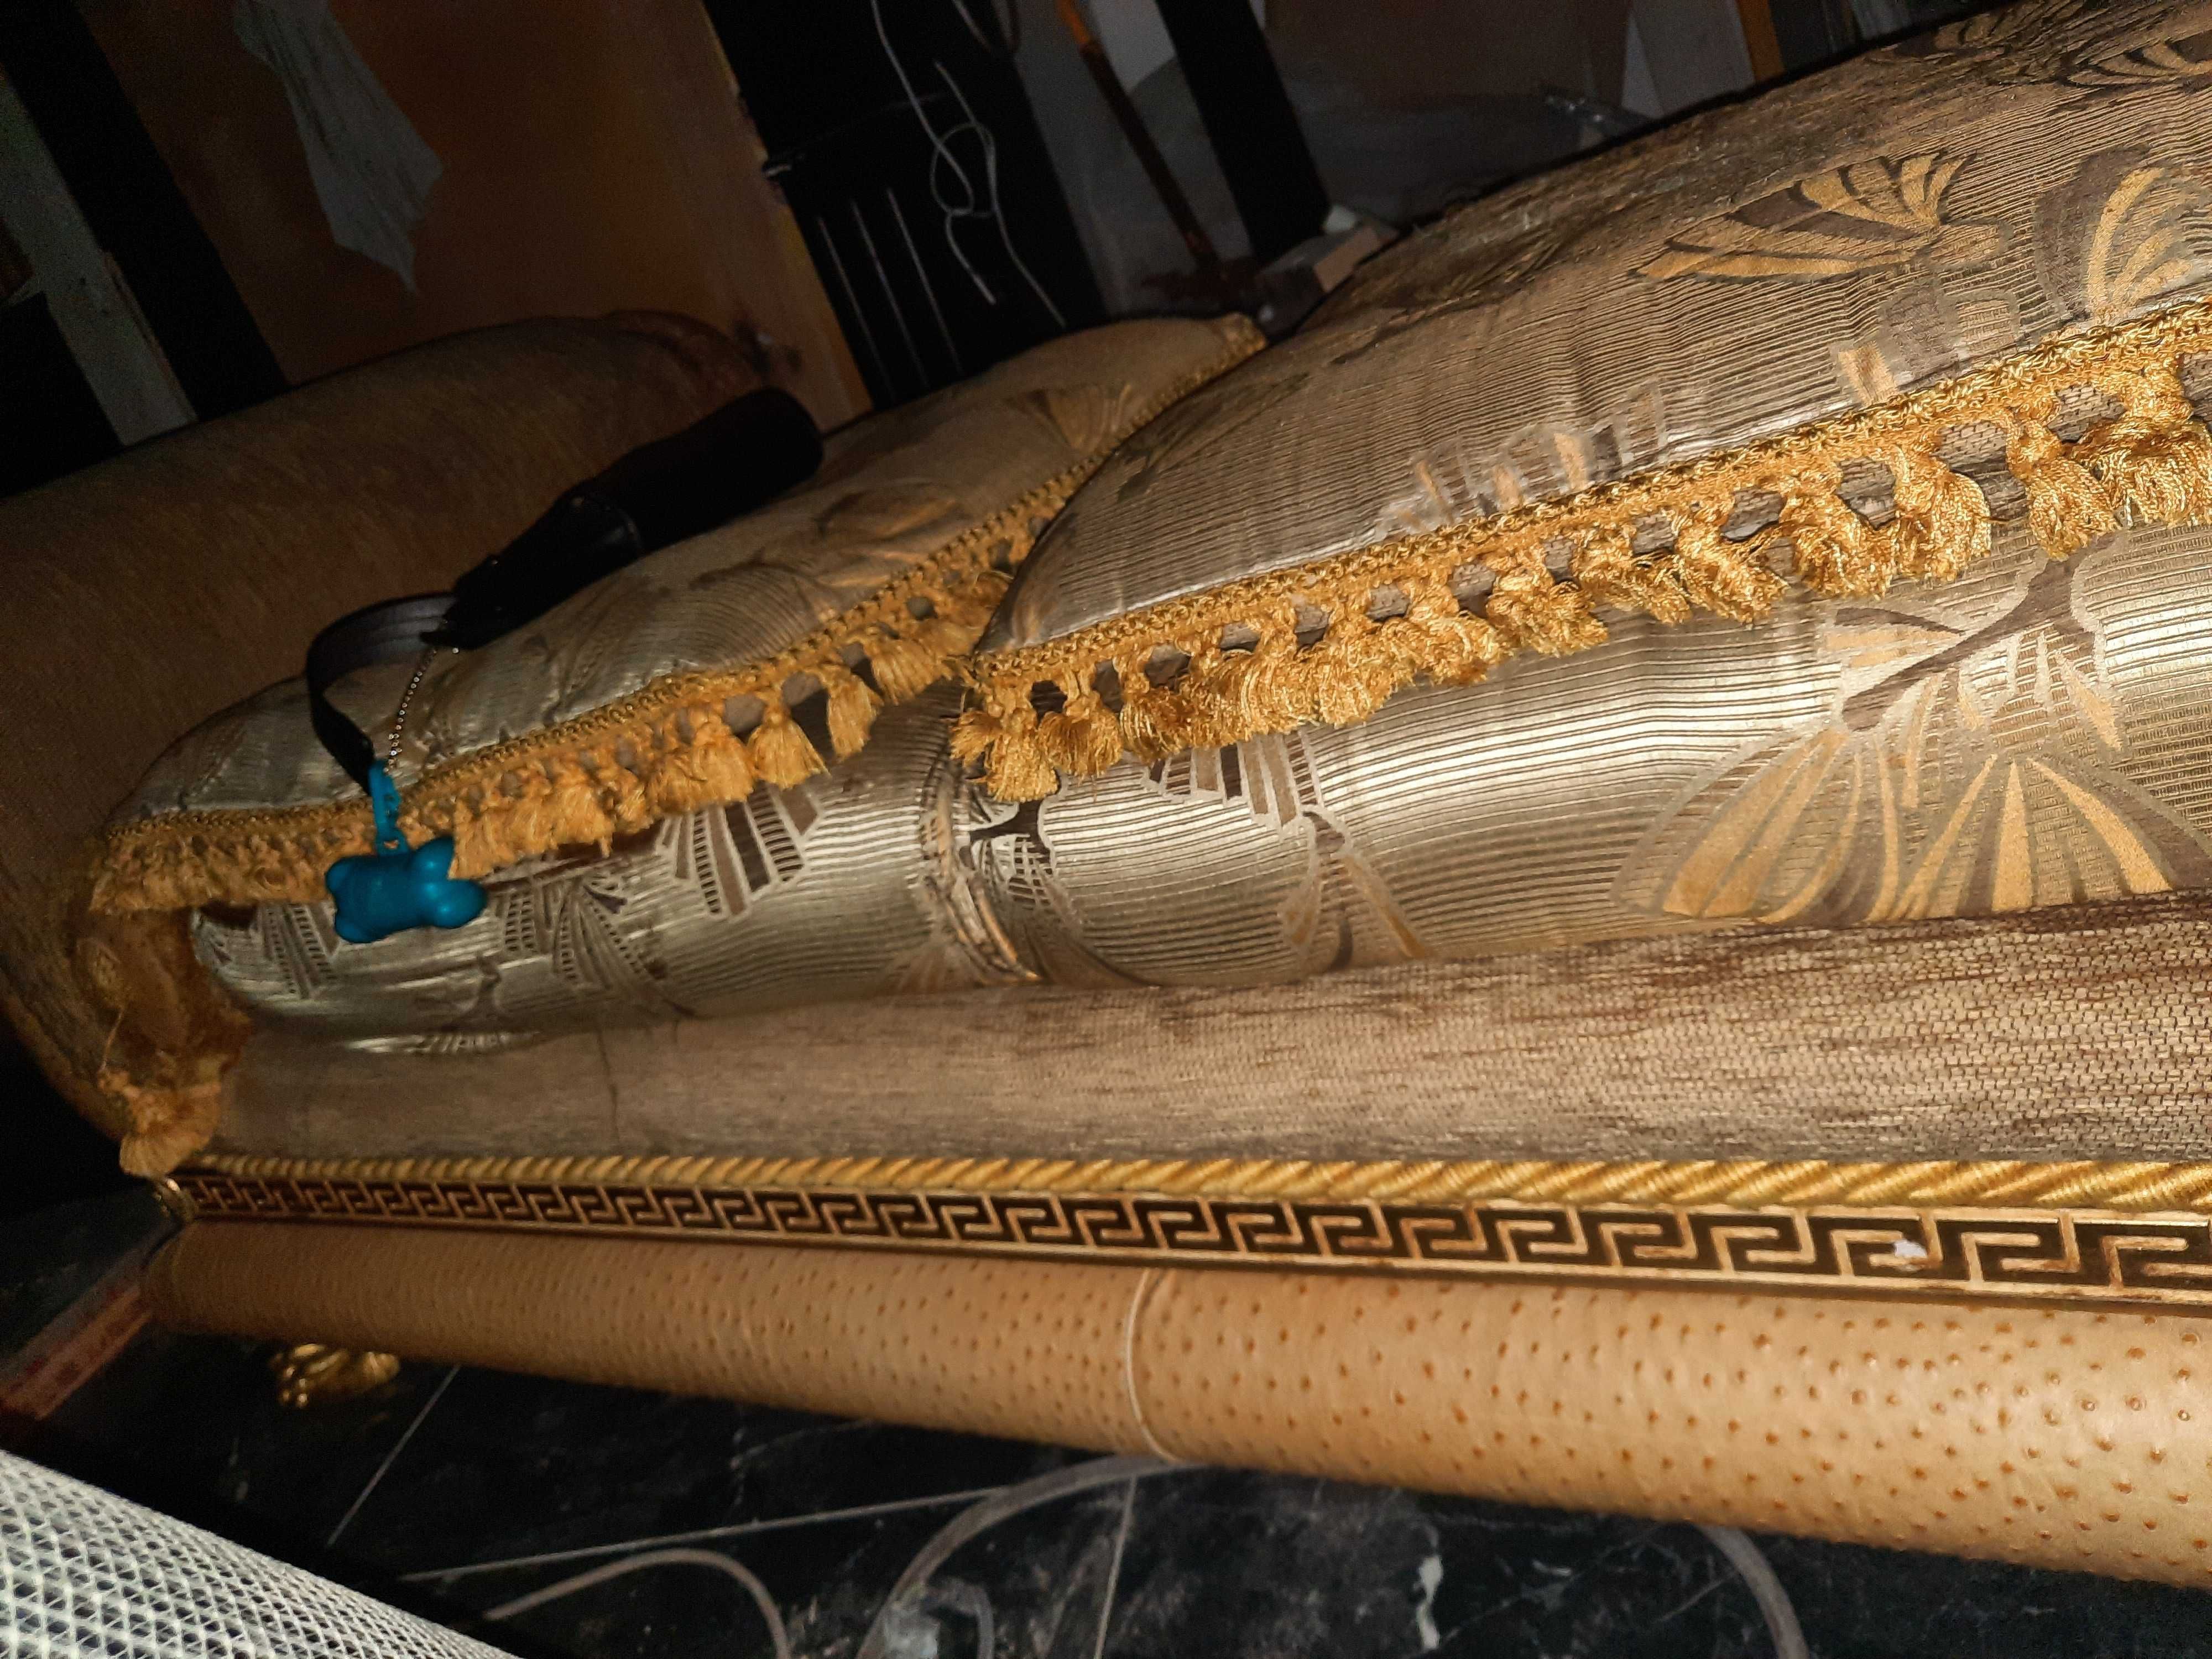 Sofa 3-osobowa Versace beżowo-złota